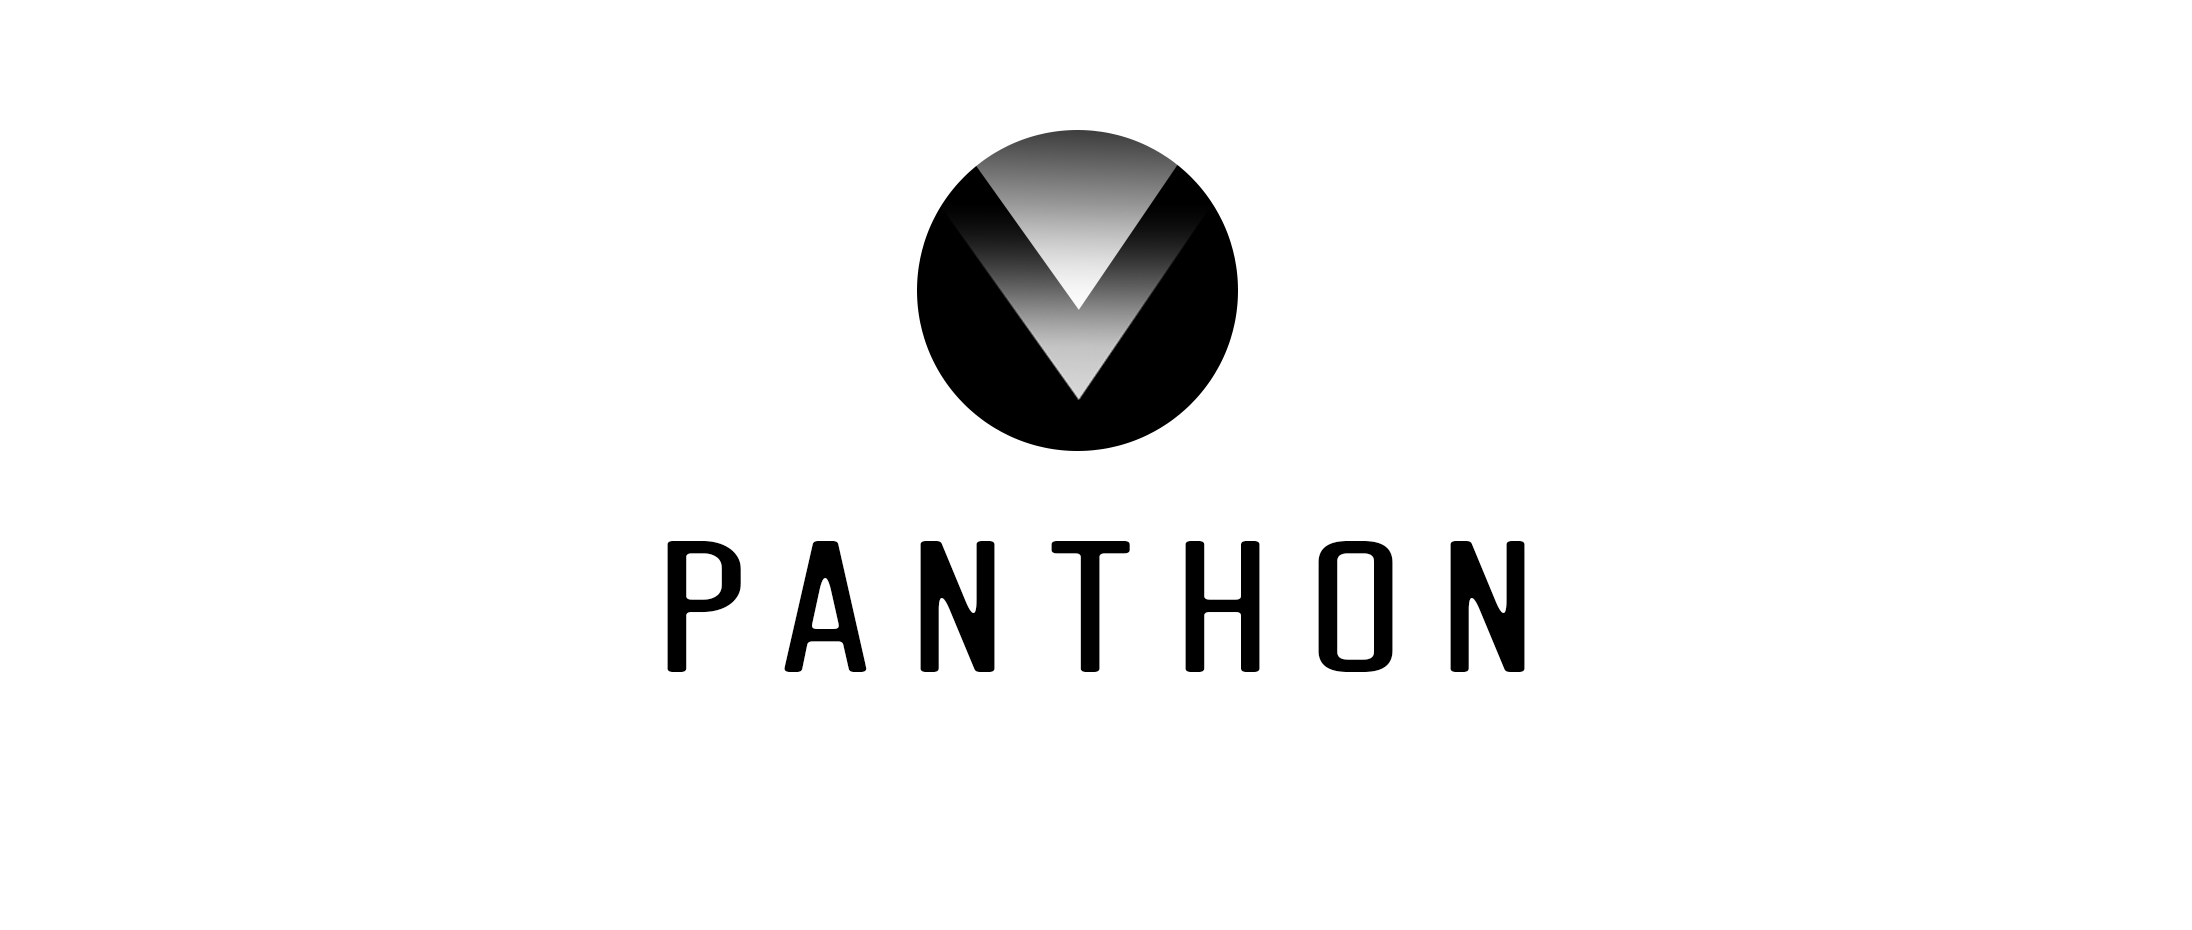 Panthon-03